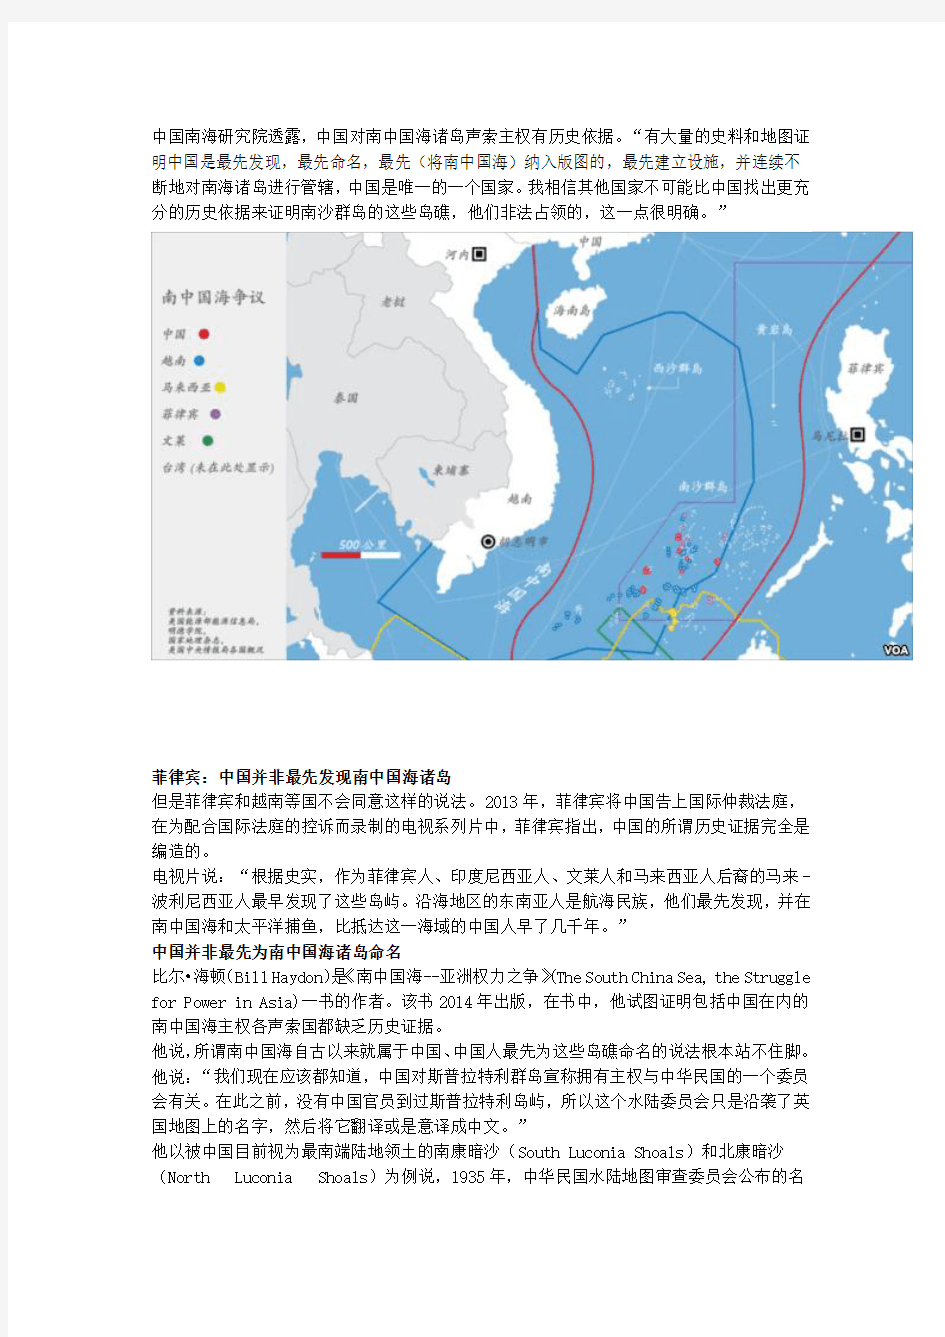 南中国海是否自古以来属于中国